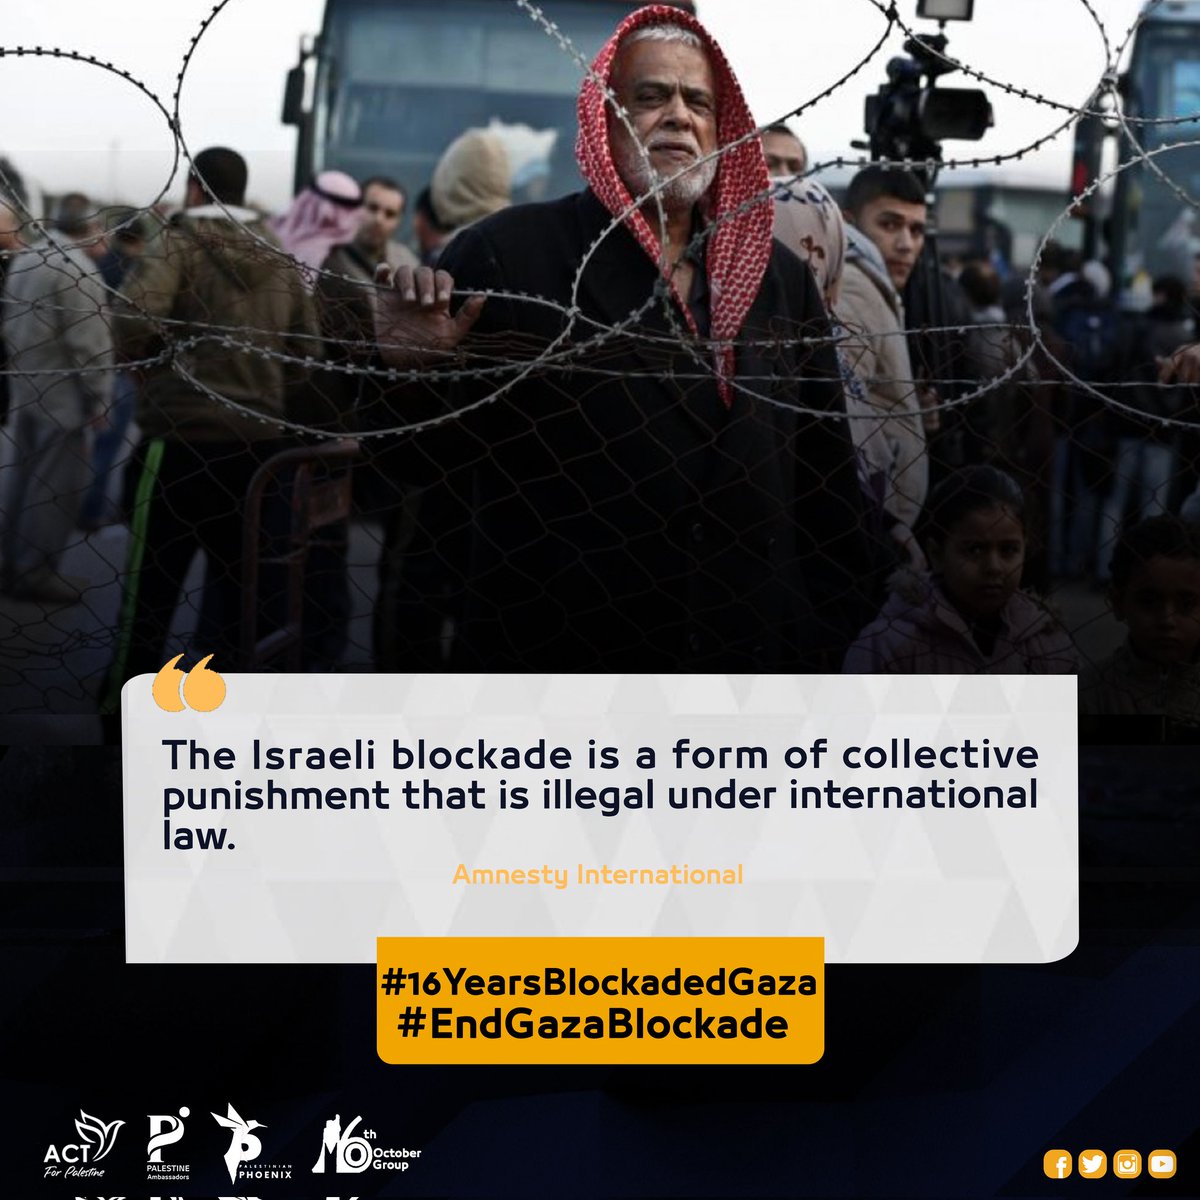 #16YearsBlockadedGaza
#EndGazaBlockade
#IsraeliCrimes